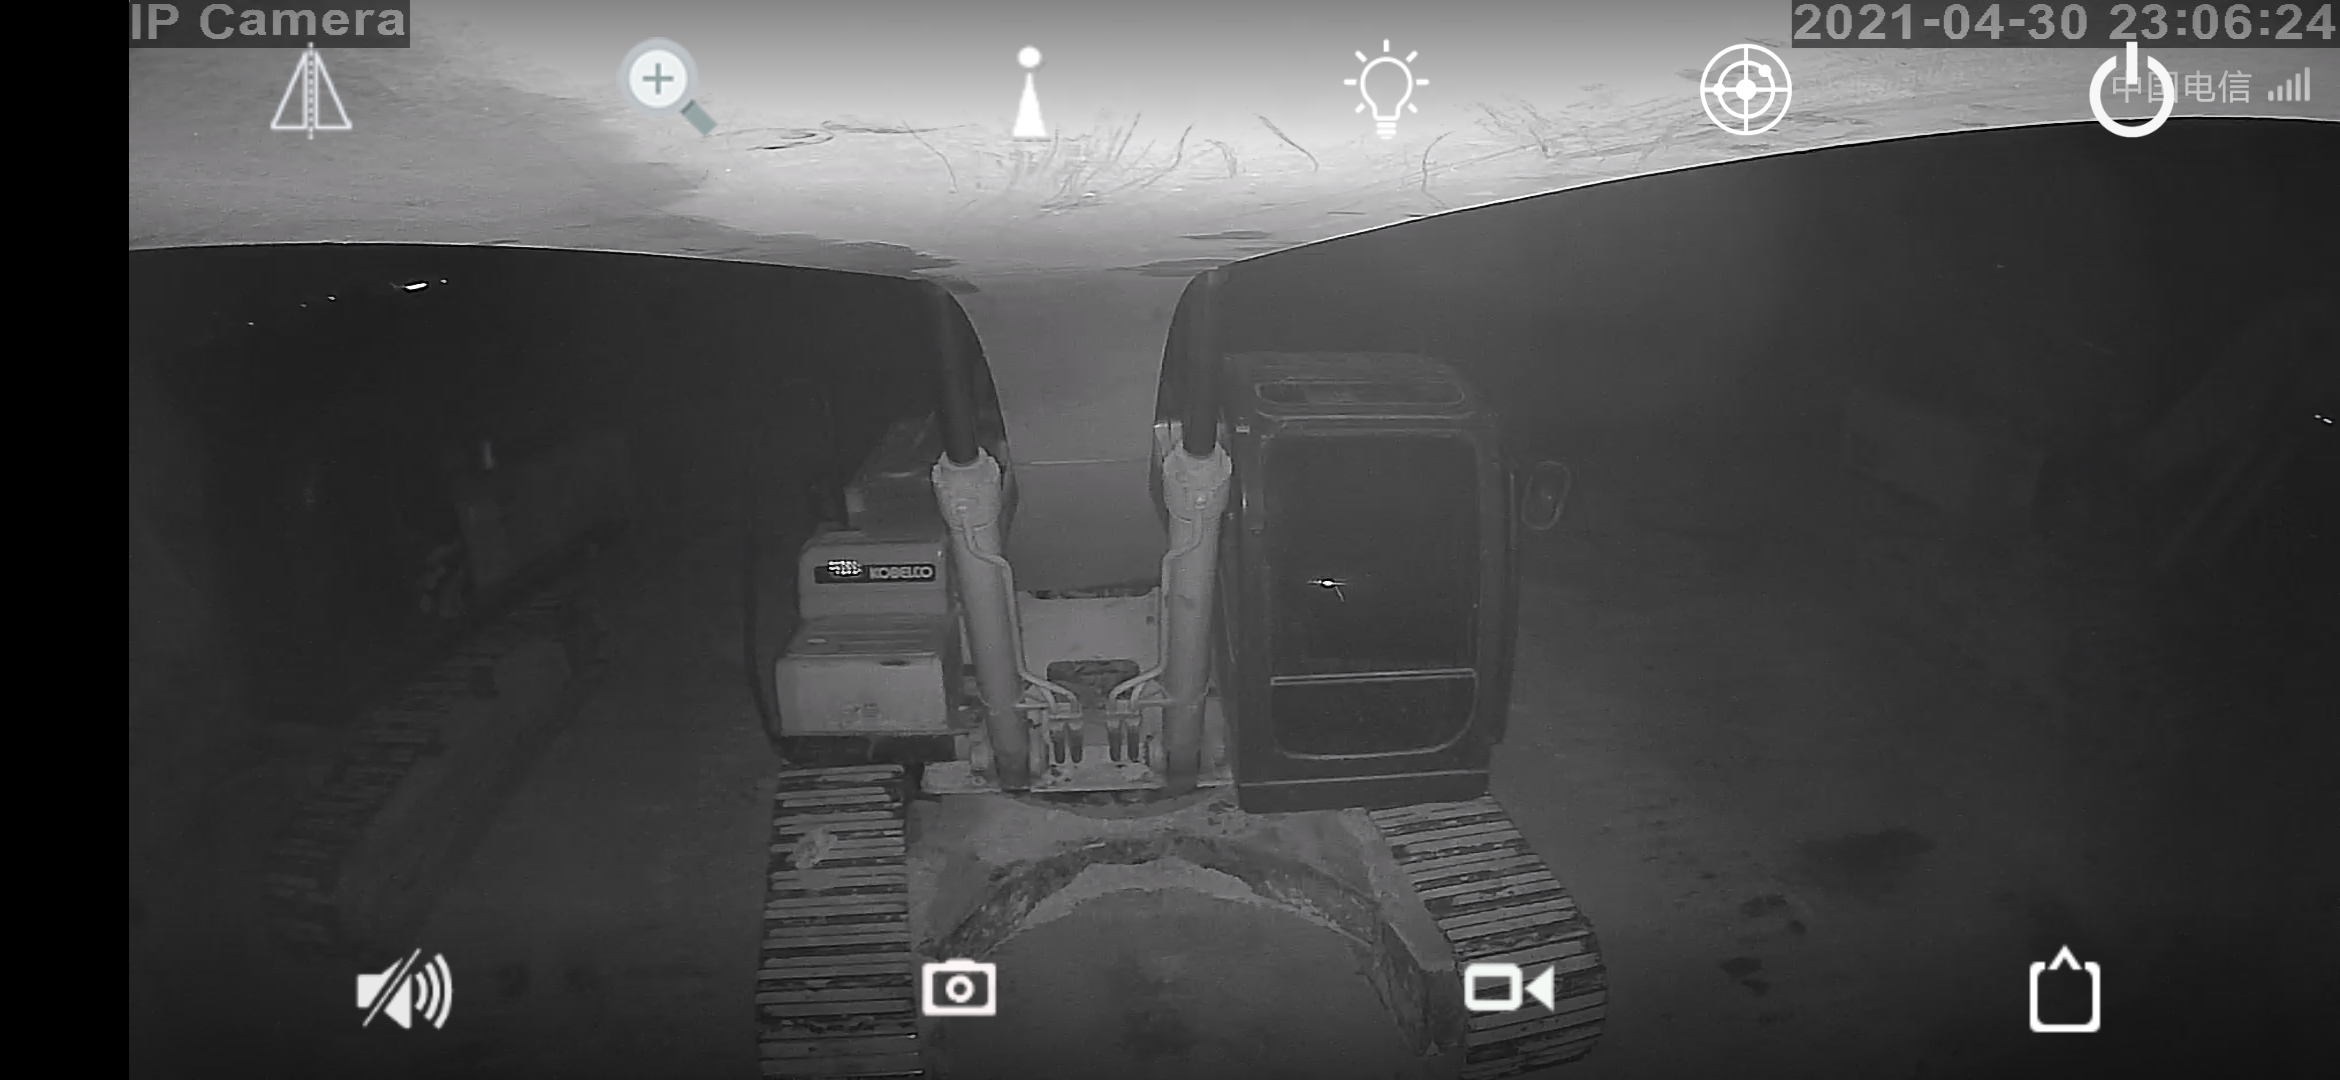 挖机晚上看车用的 连手机远程监控摄像头